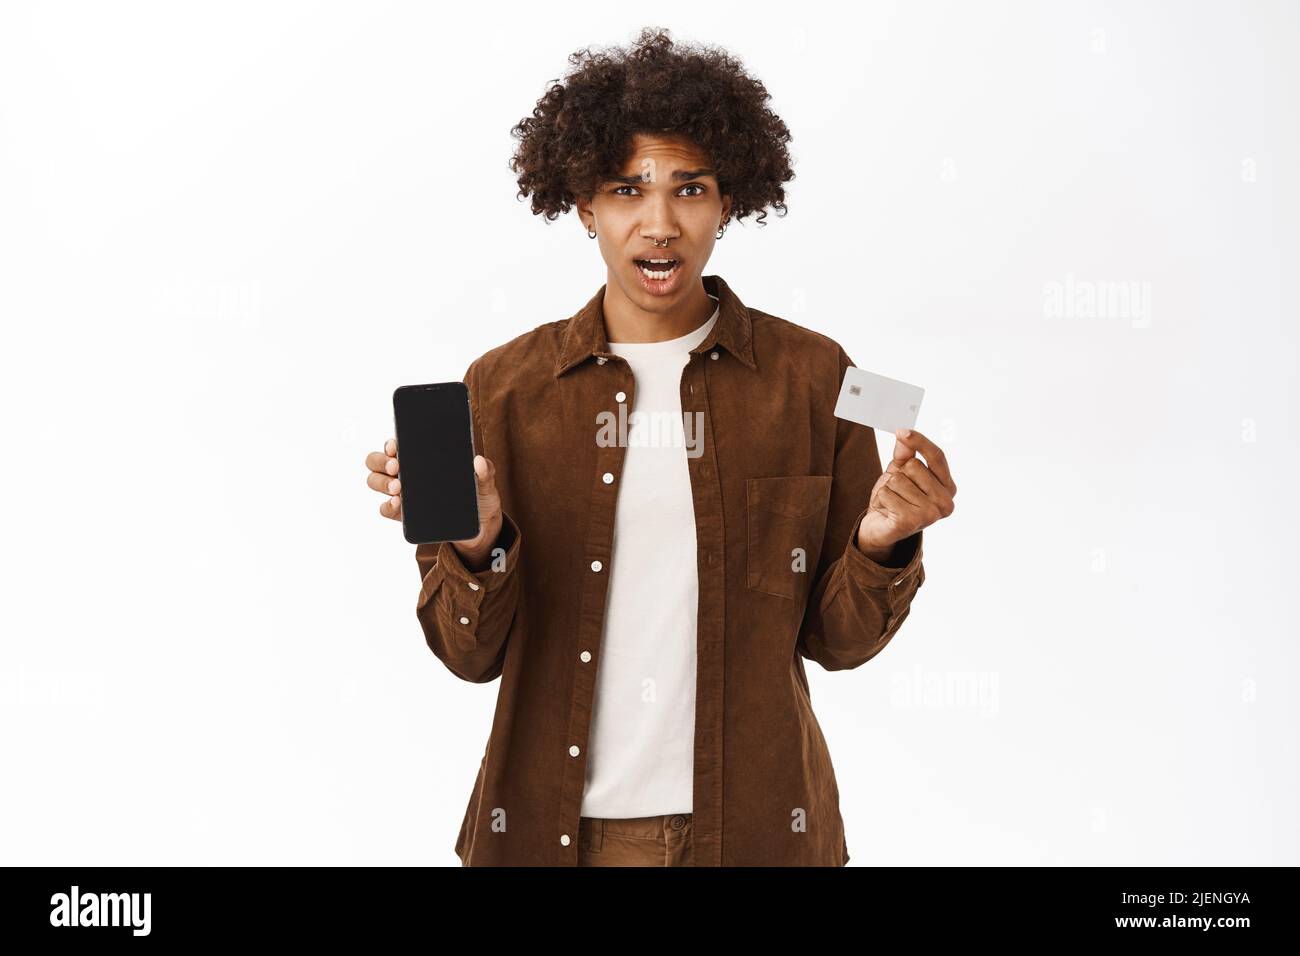 Portrait d'un homme hispanique choqué montre carte de crédit et téléphone mobile, application écran, debout dans des vêtements décontractés sur fond blanc Banque D'Images